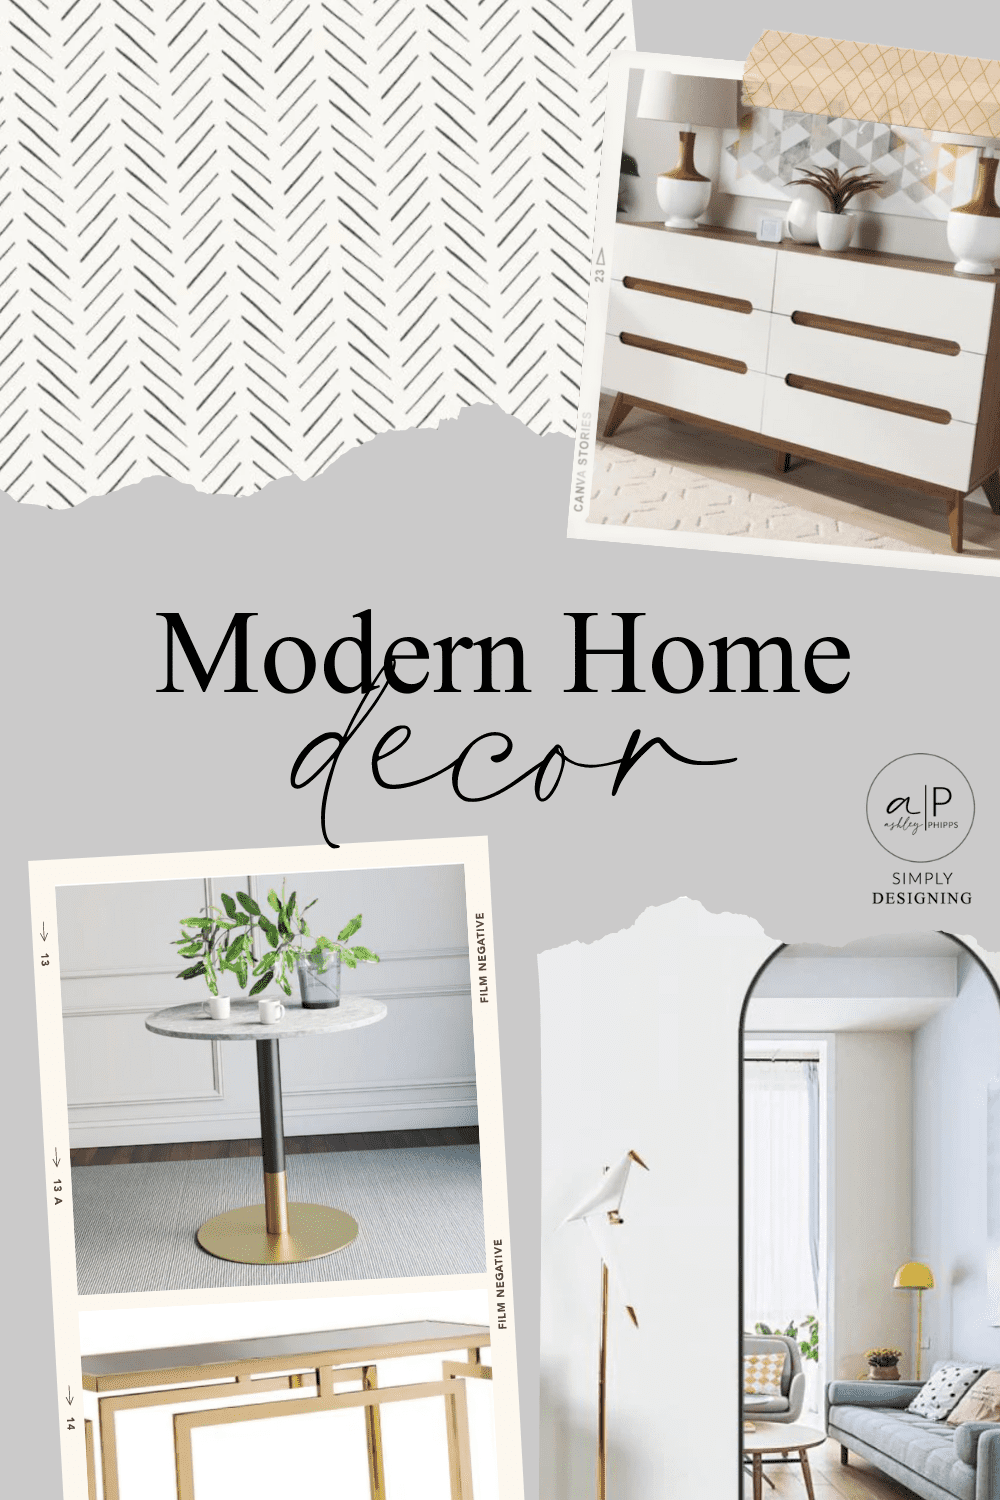 Modern Home Decor The Home Depot 16 Budget-Friendly Modern Home Decor Ideas 11 chicken pot pie recipe